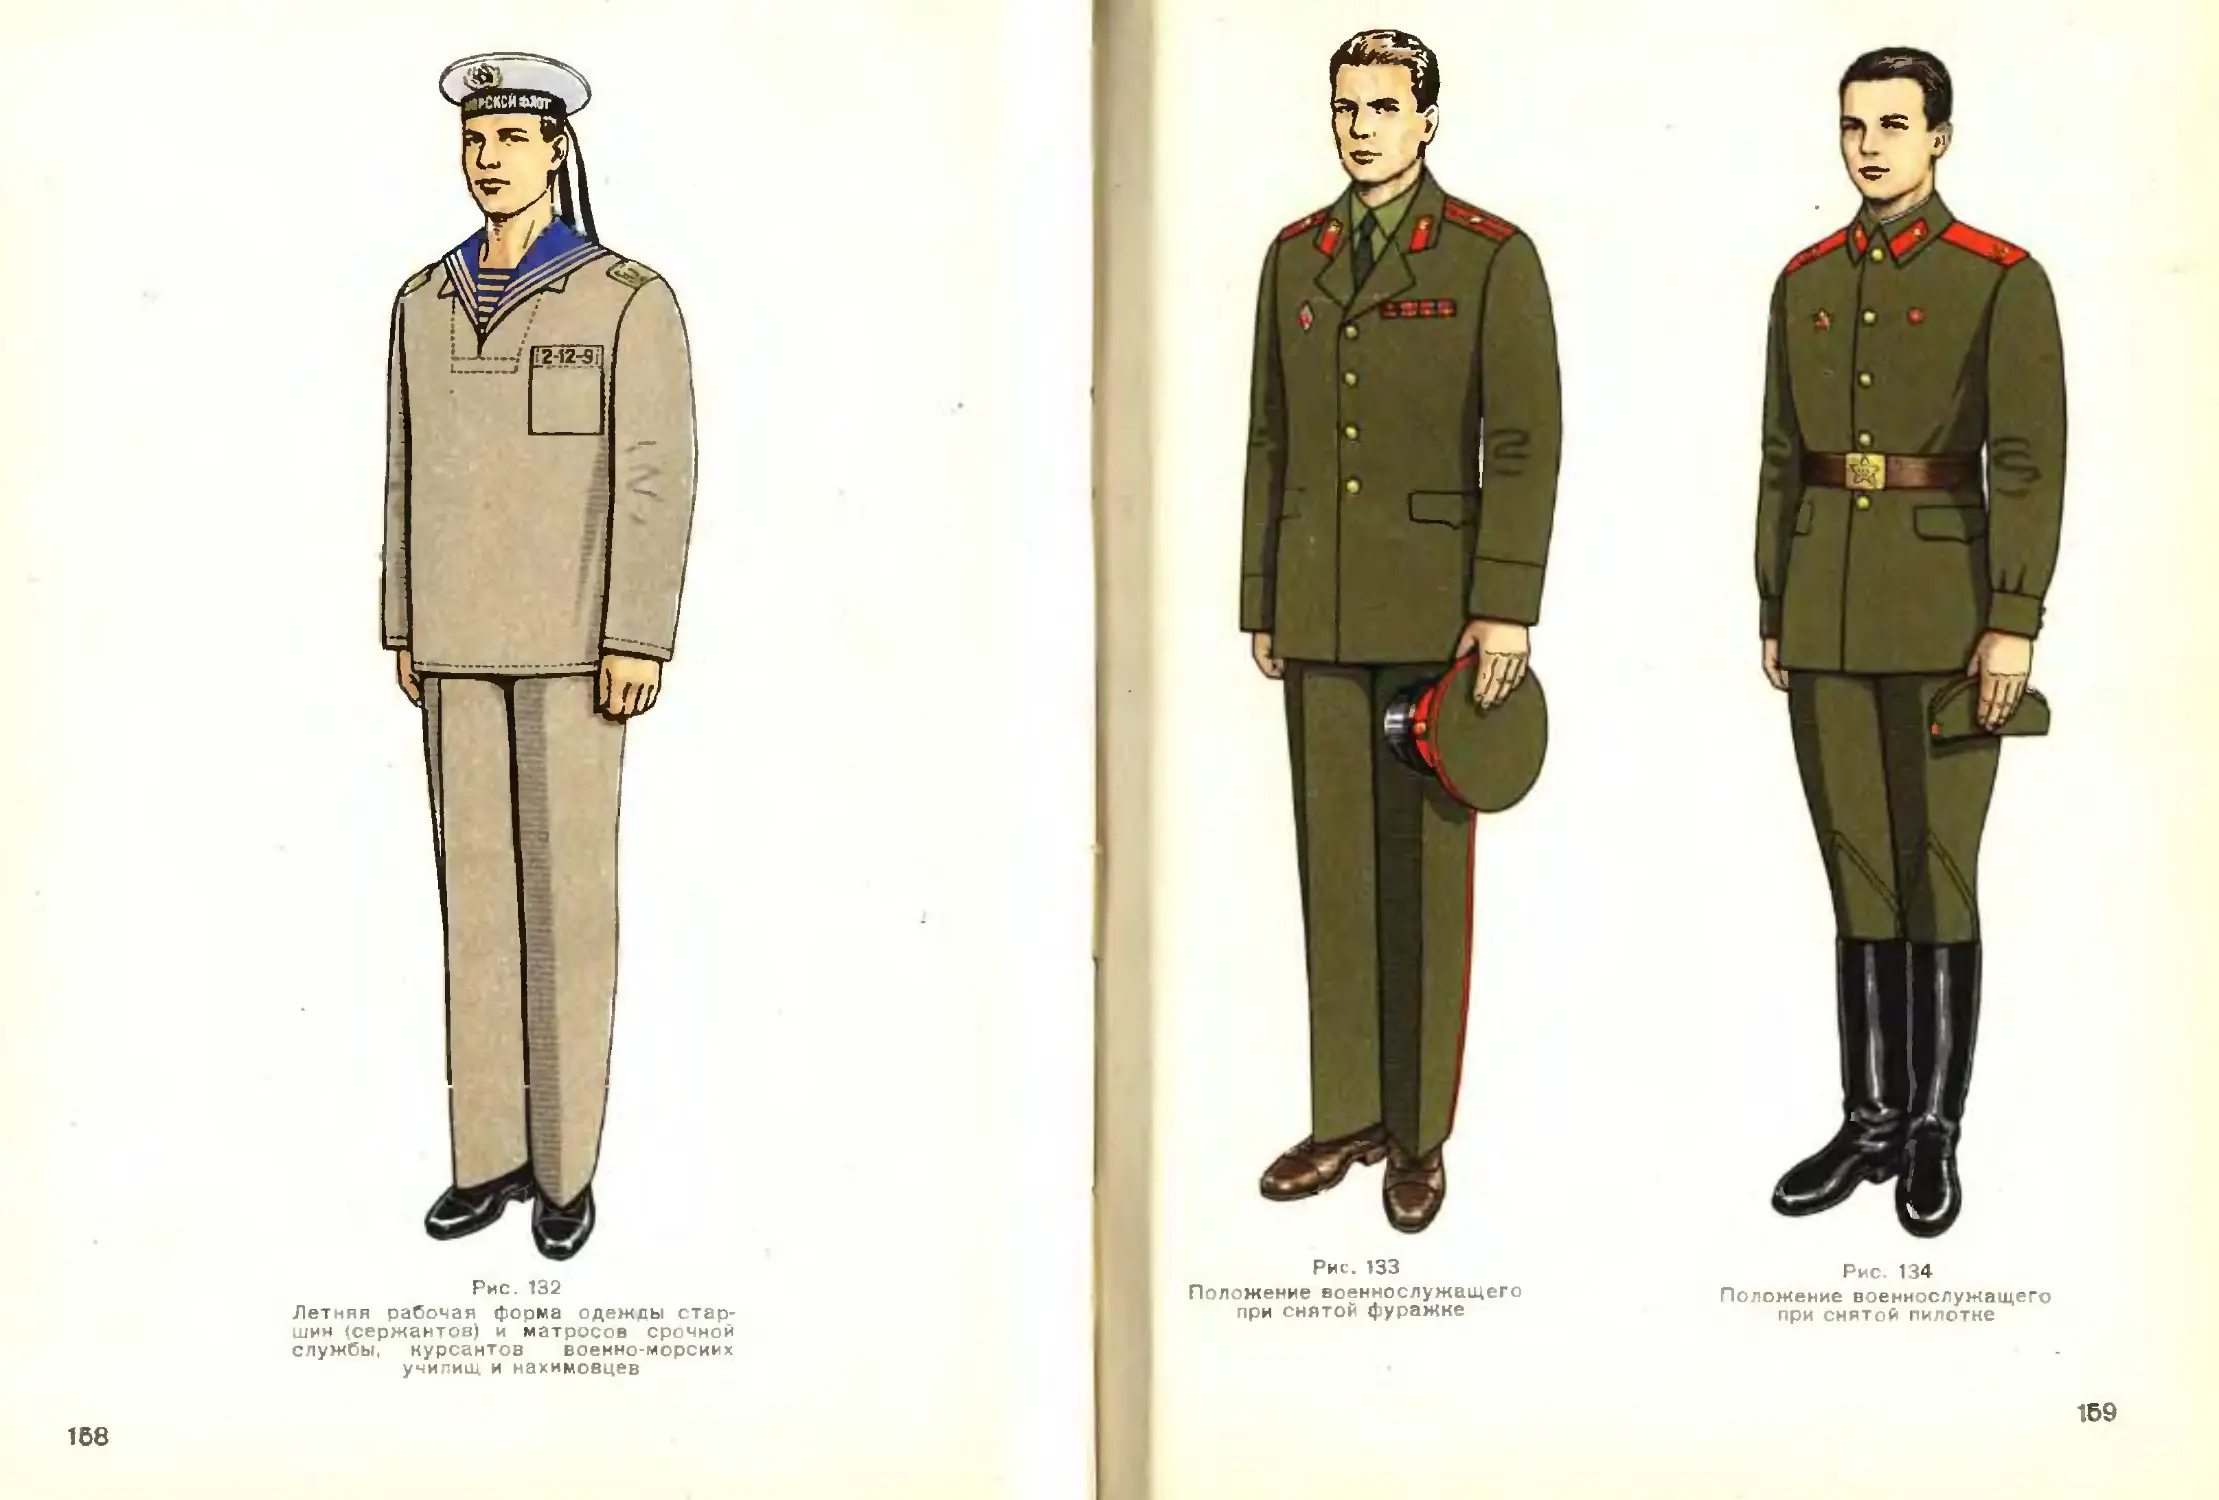 Рост военной формы. Одежда солдата рисунок. Рисунок верхняя одежда солдата. Ателье военной формы. Форма одежды военнослужащих СССР до 1967 года.